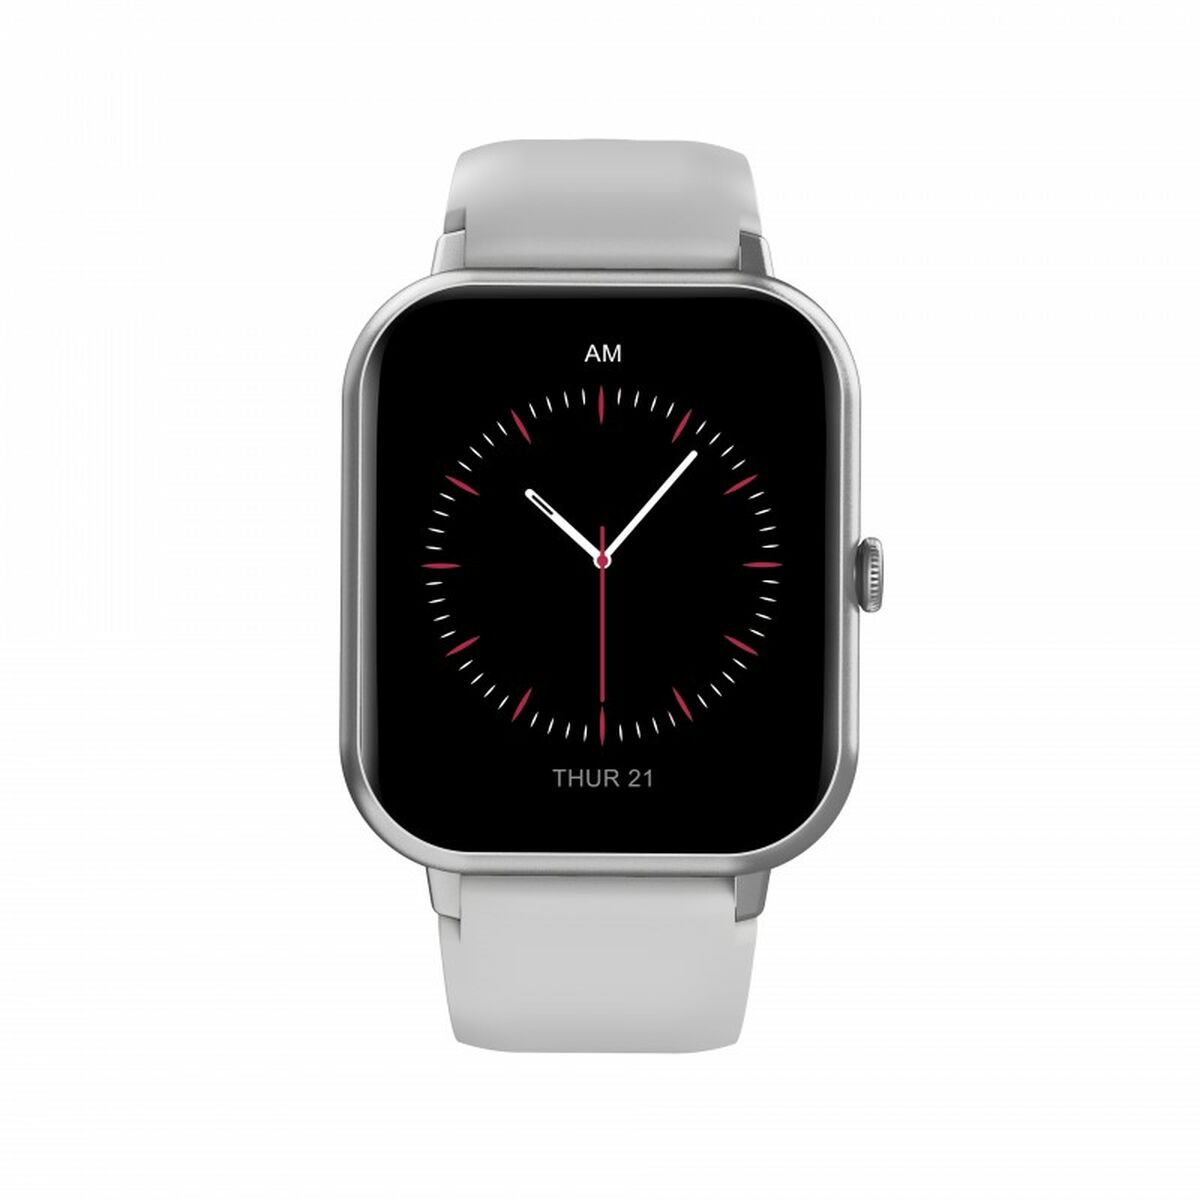 Kaufe Smartwatch DCU CURVED GLASS PRO 1,83" Grau bei AWK Flagship um € 53.00